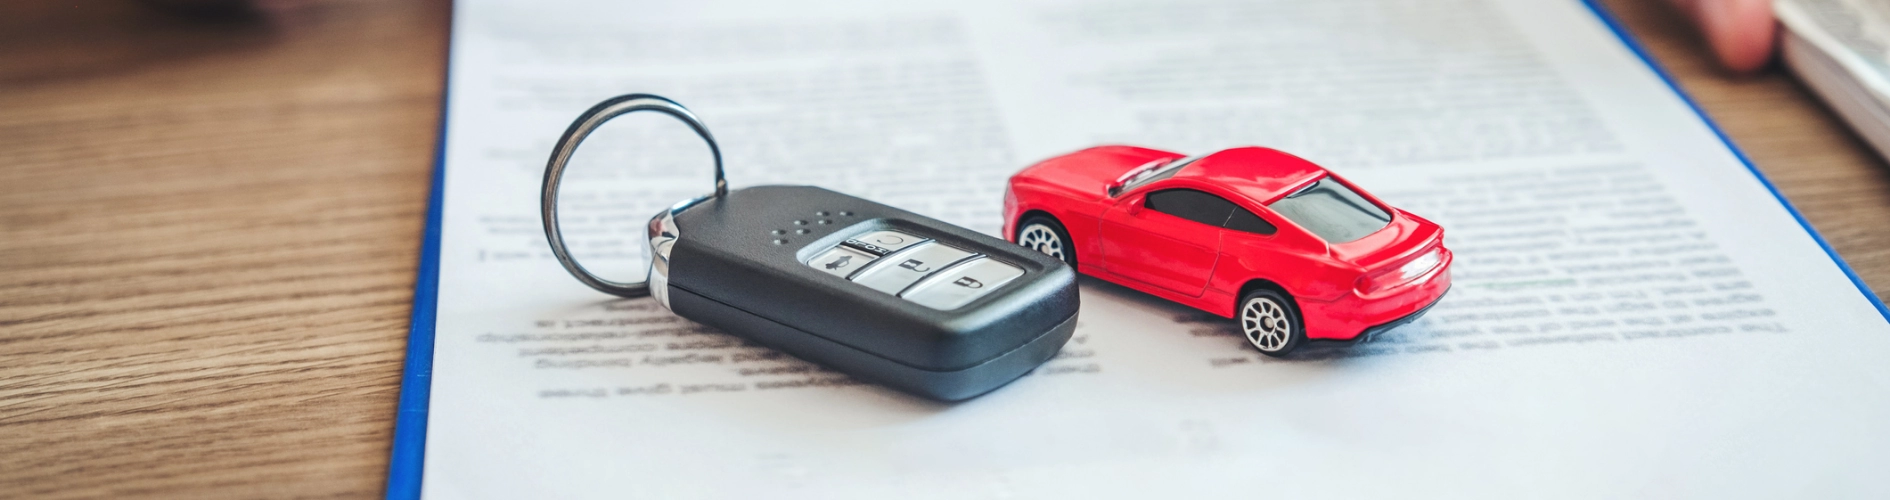 model samochodu i kluczyki samochodowe na umowie ubezpieczeniowej